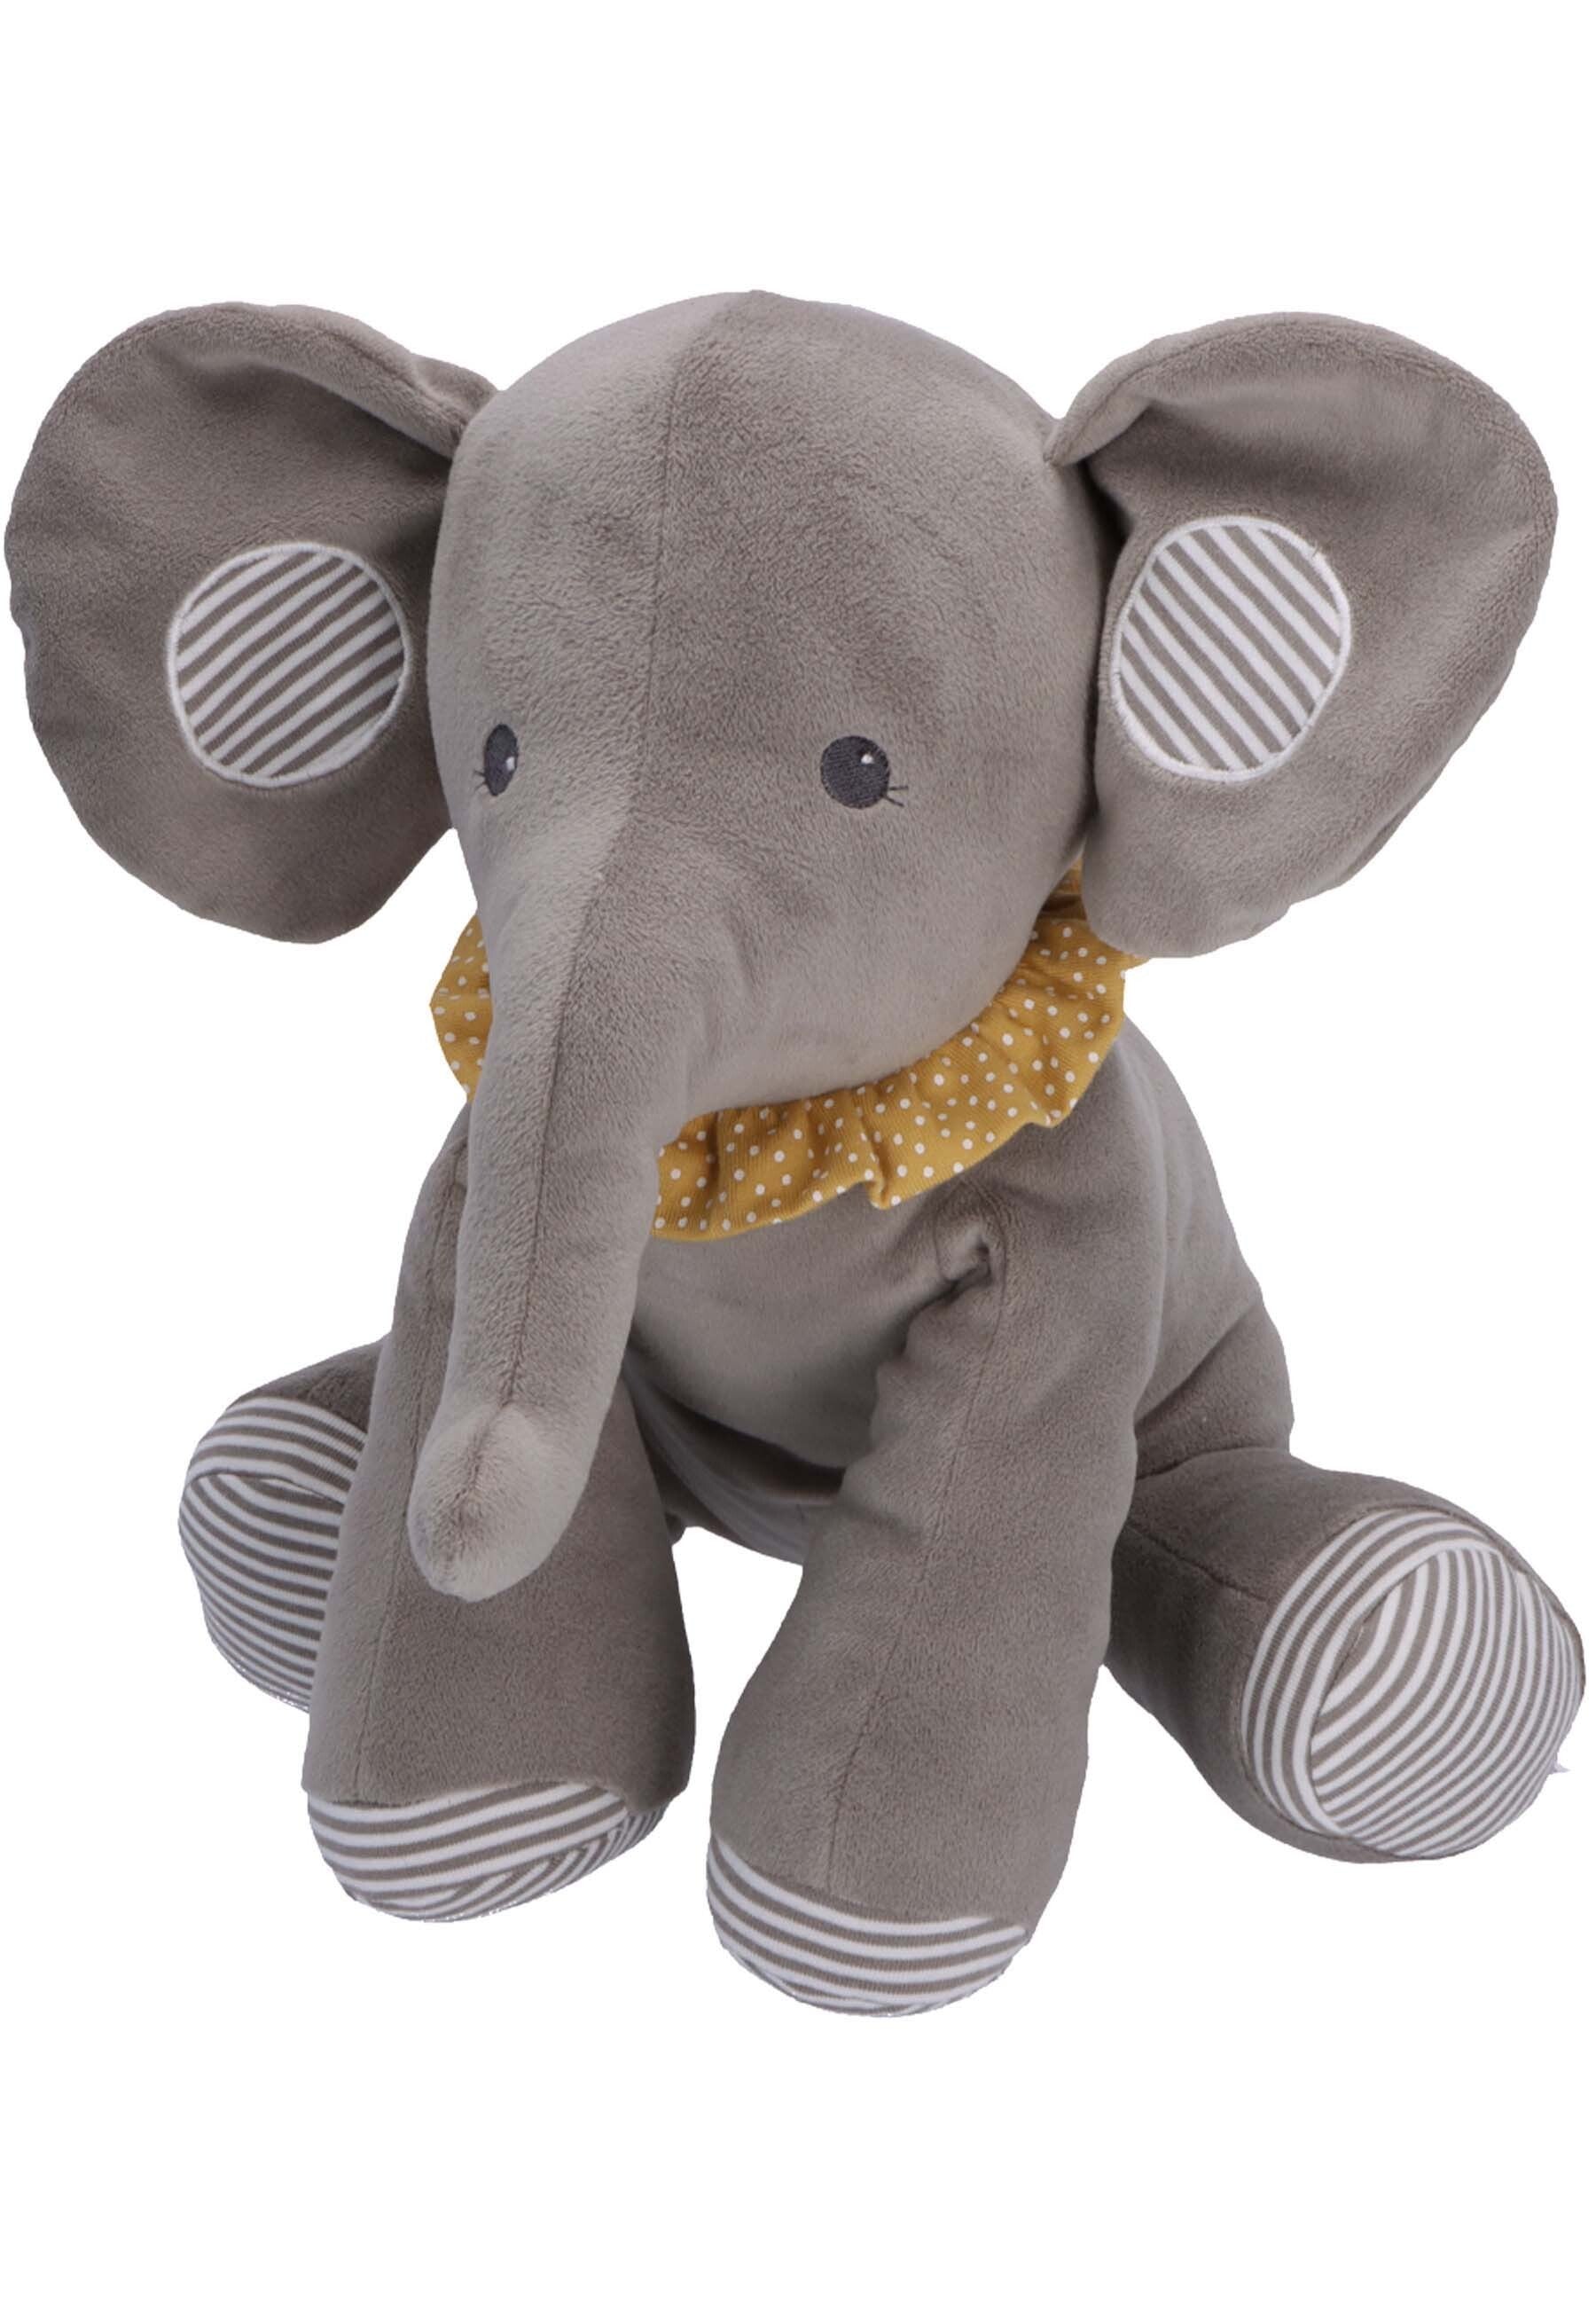 Sternchen Kuscheltier Elefant Eddy ohne Rassel ⭐️